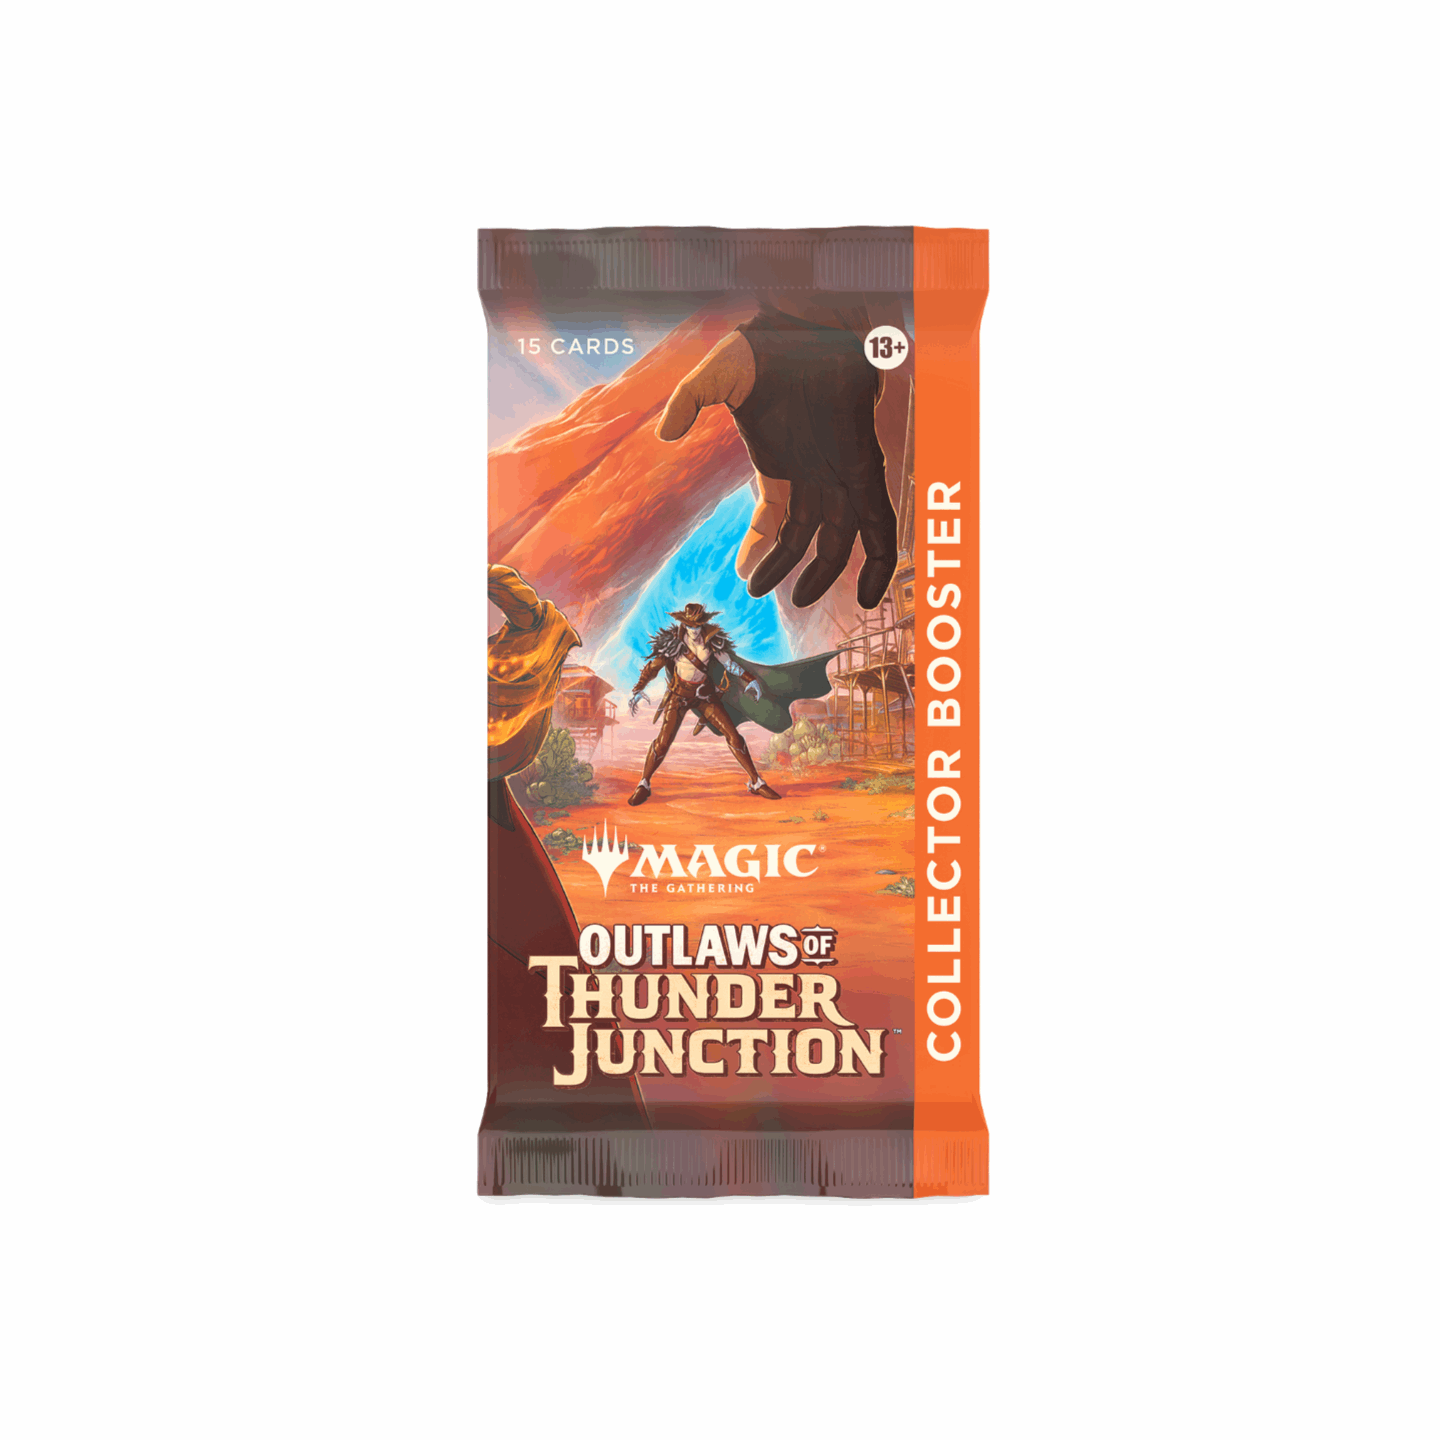 Magic: The Gathering, Outlaws of Thunder Junction, Collectors Booster Box, Kartenspiel, Sammelkarten, Sammler, selten, mächtig, Wild West, Abenteuer, Strategie, Spiel, Erwachsene, Geschenk